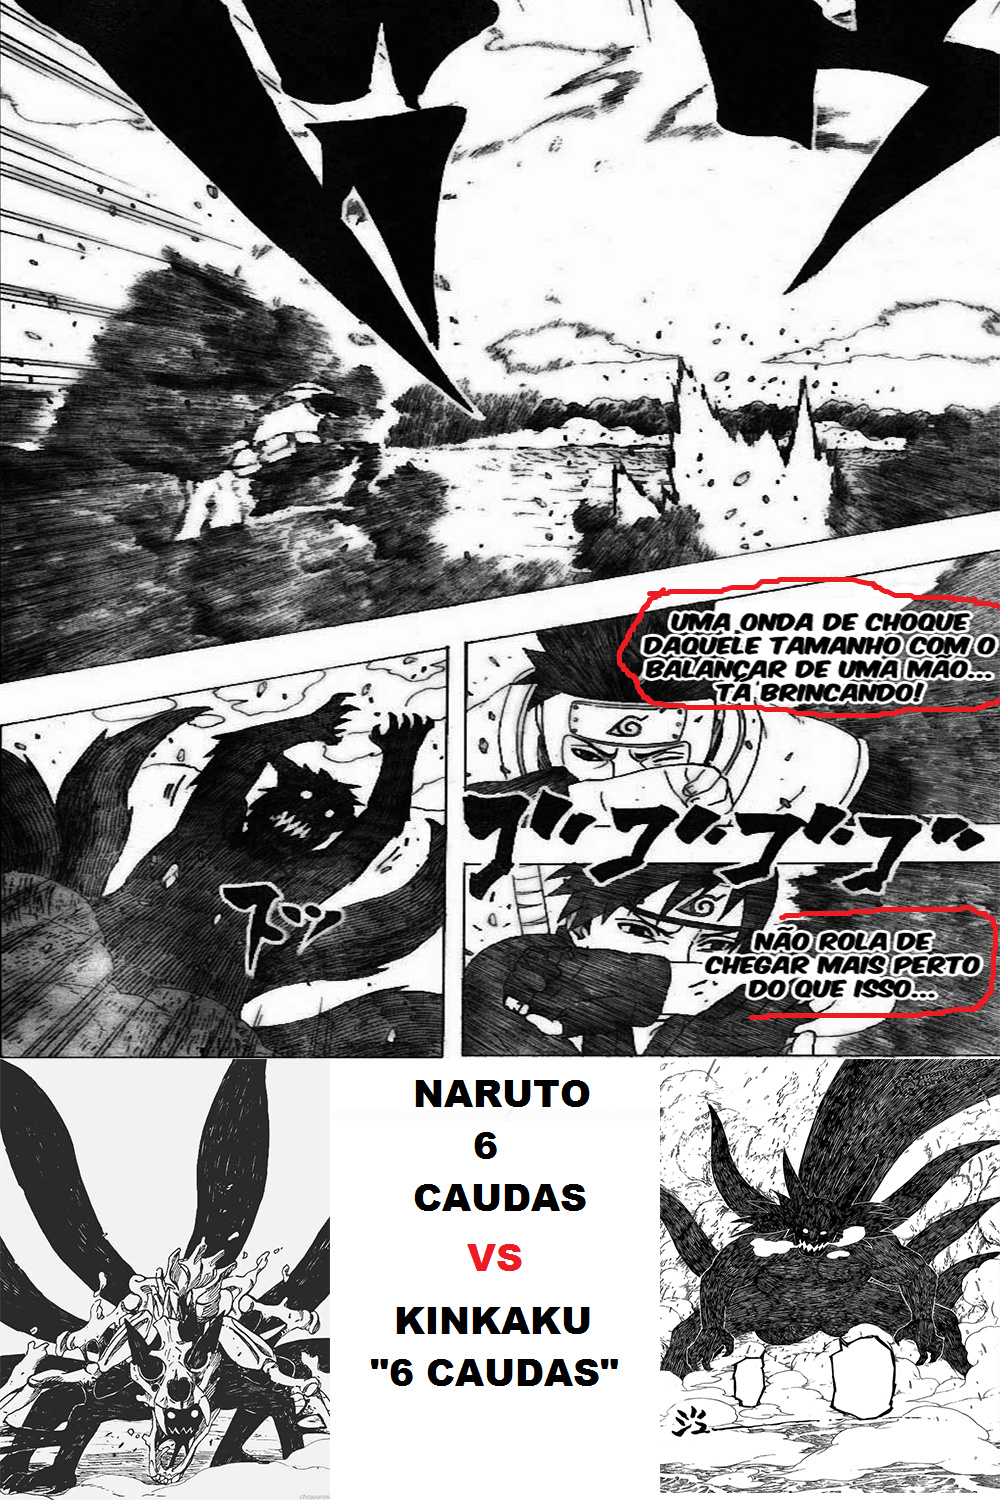 Quais desses ninjas realmente derrotariam Naruto 4 Tails? - Página 2 Fhgrth10